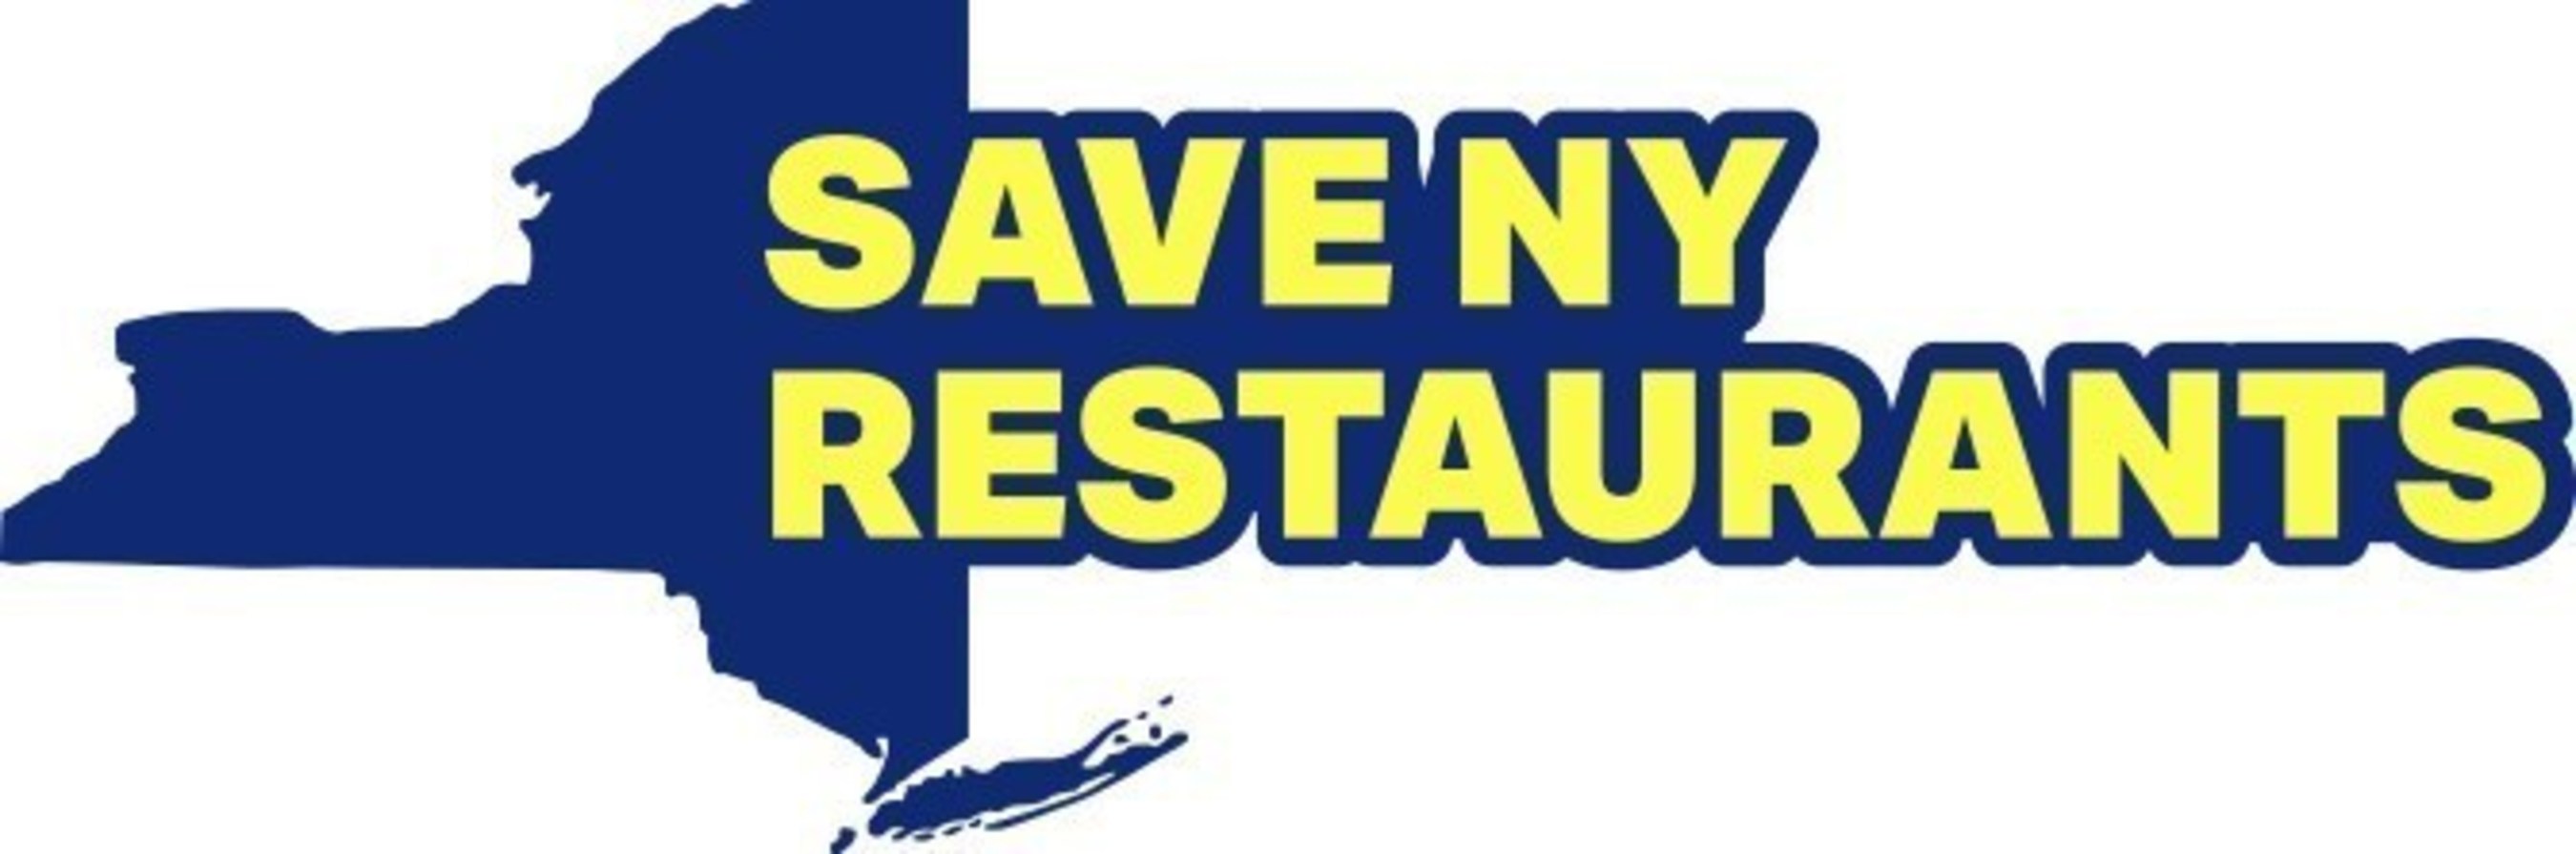 Save NY Restaurants